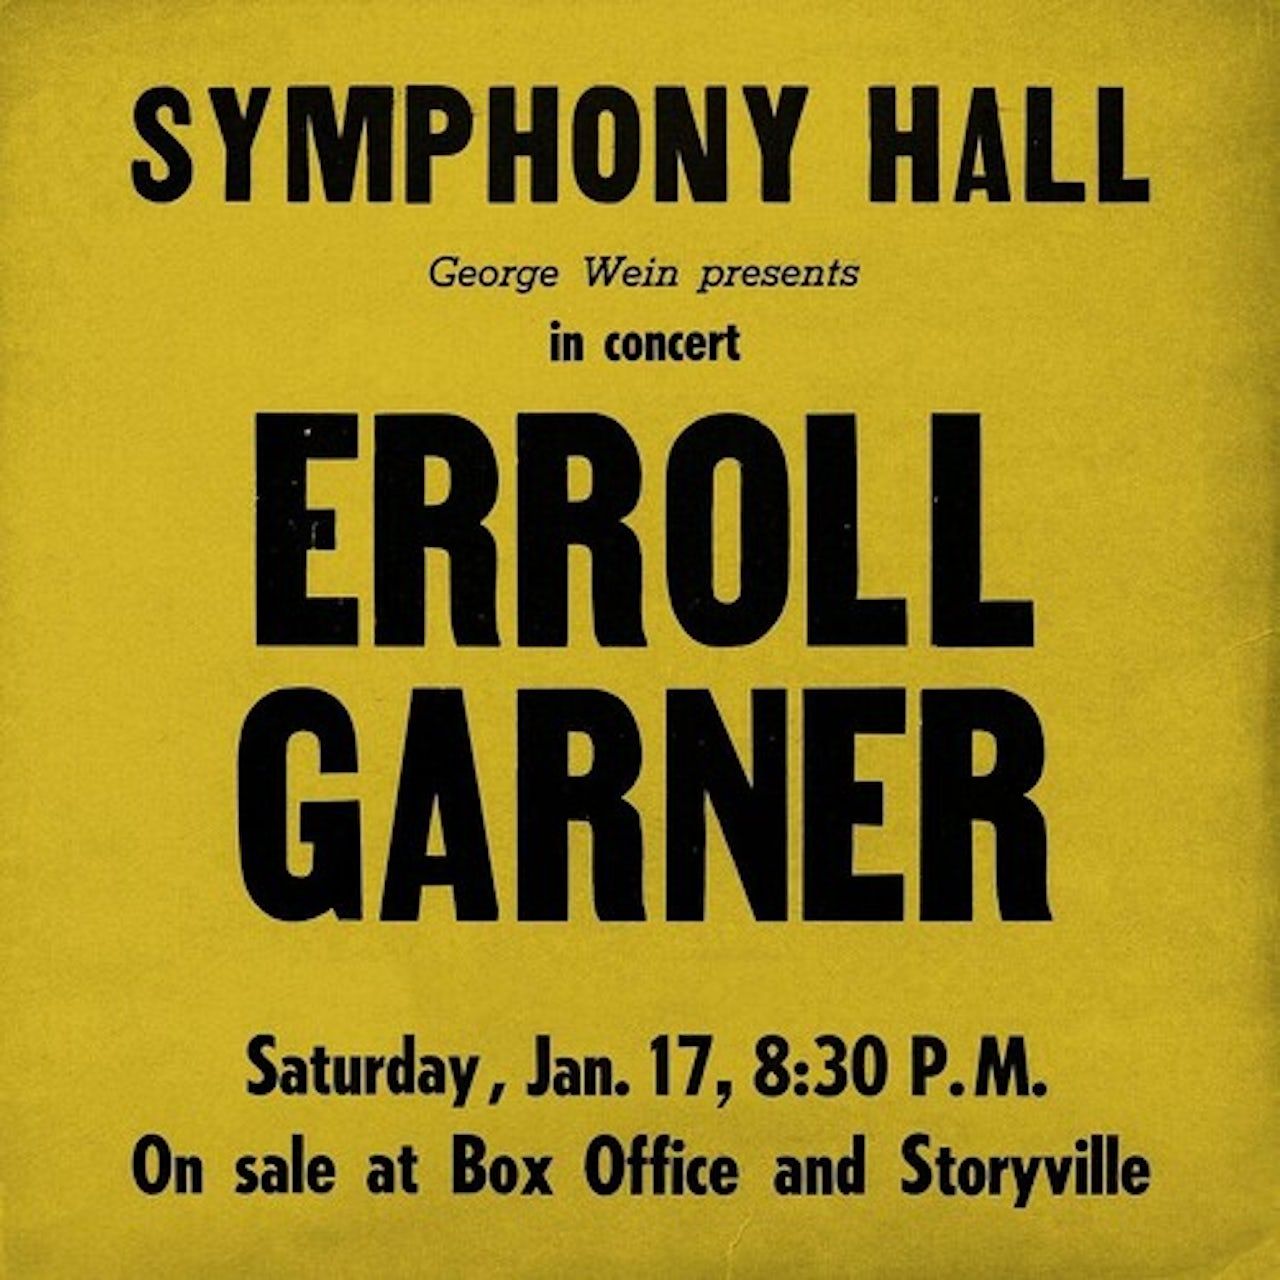 Виниловая пластинка Garner, Erroll, Symphony Hall Concert (0673203118911) 4050538421408 виниловая пластинка garner erroll trio